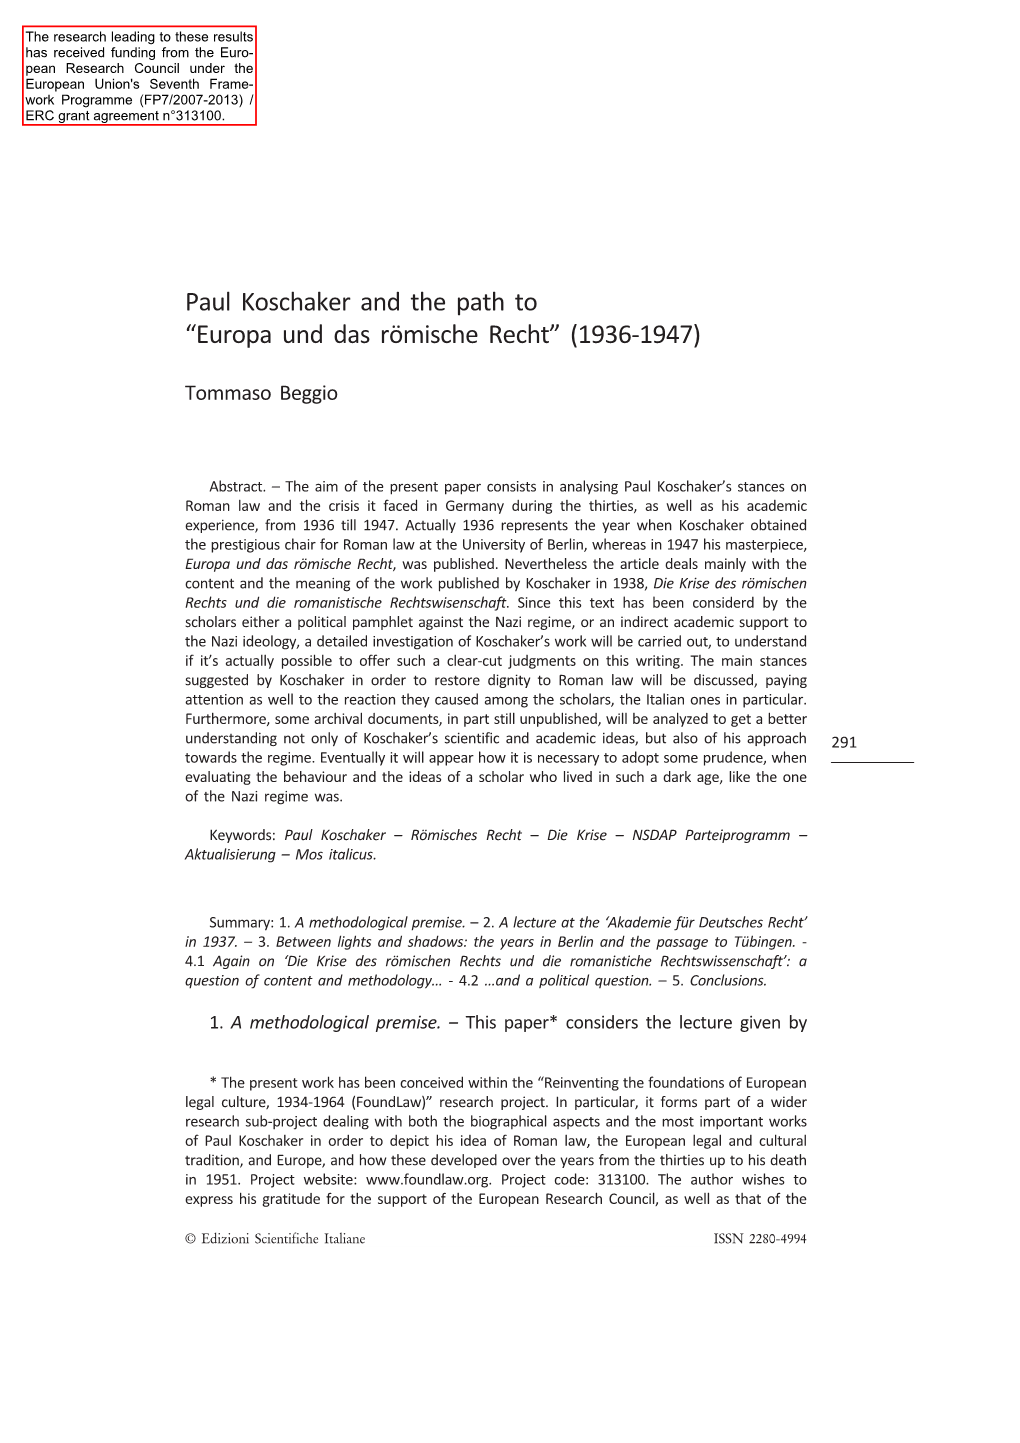 Paul Koschaker and the Path to “Europa Und Das Römische Recht” (1936-1947)